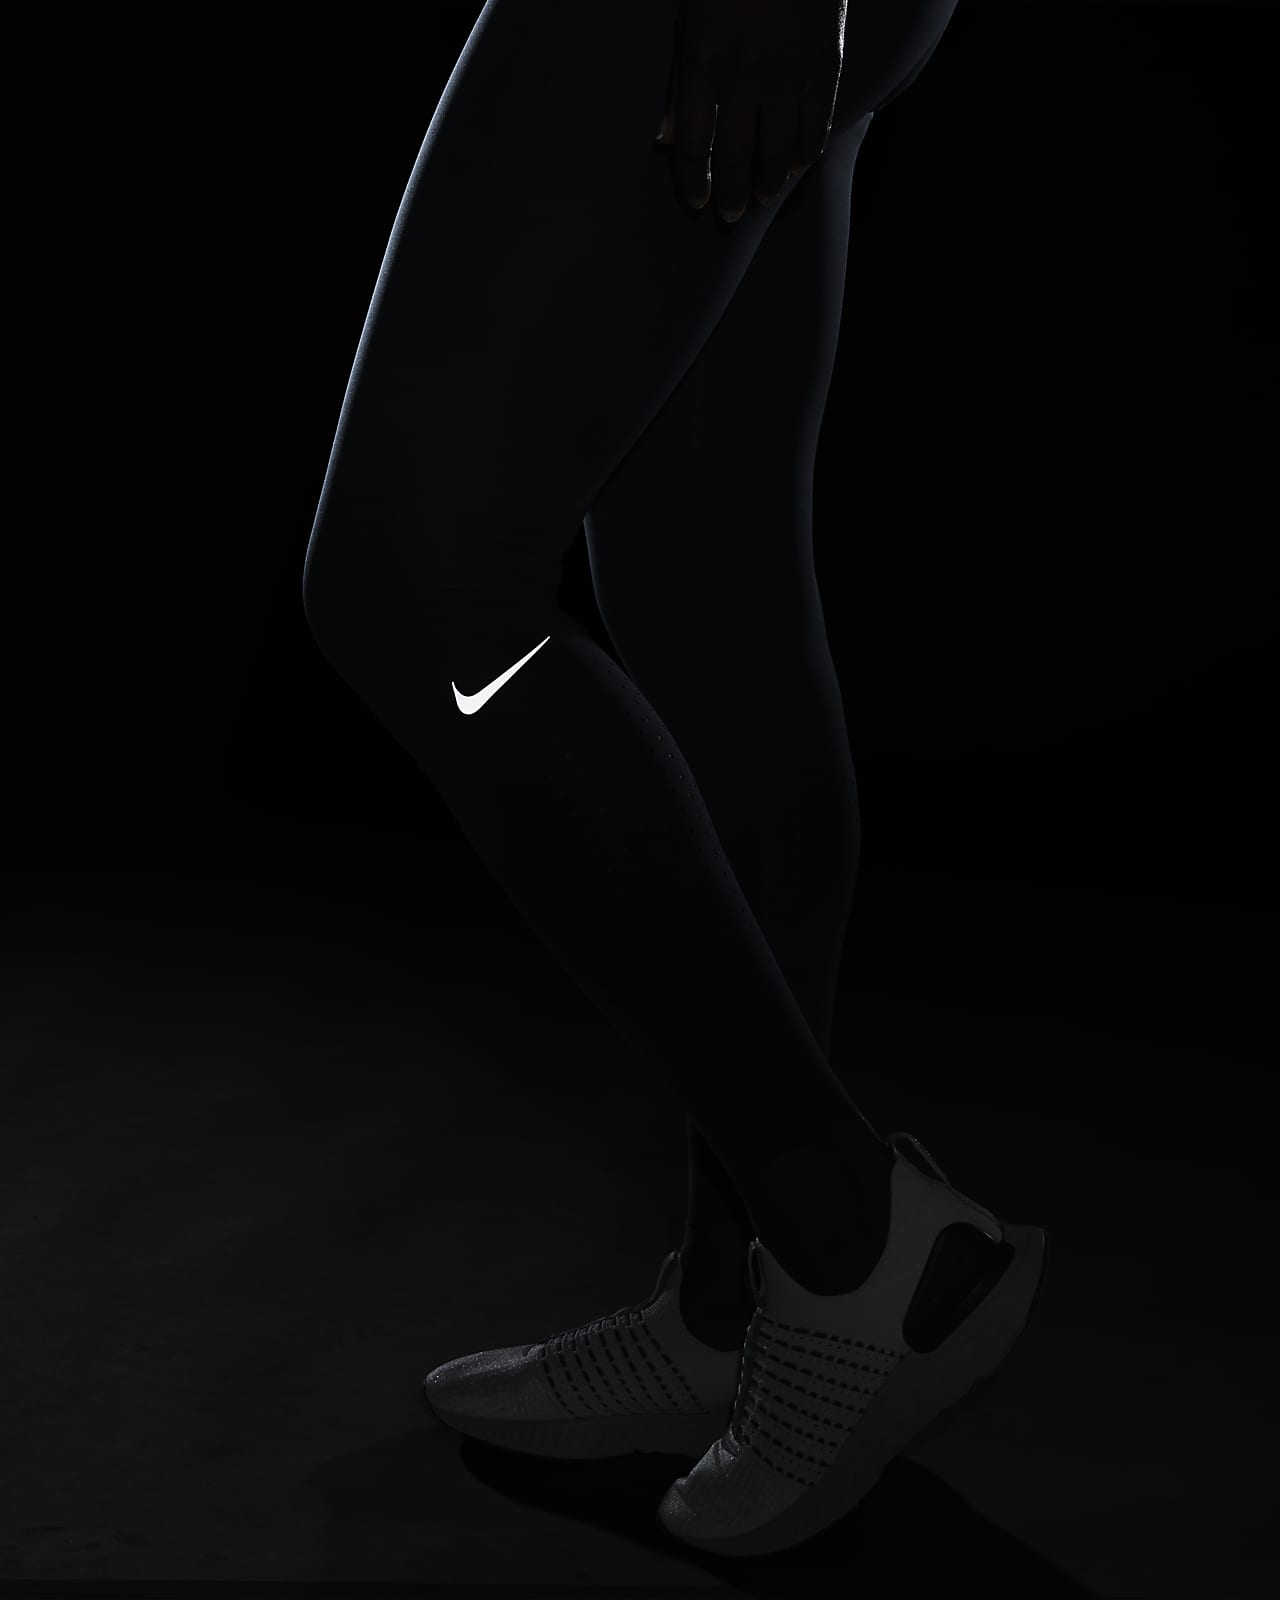 Nike Epic Luxe Women's Mid-Rise Full-Length Leggings